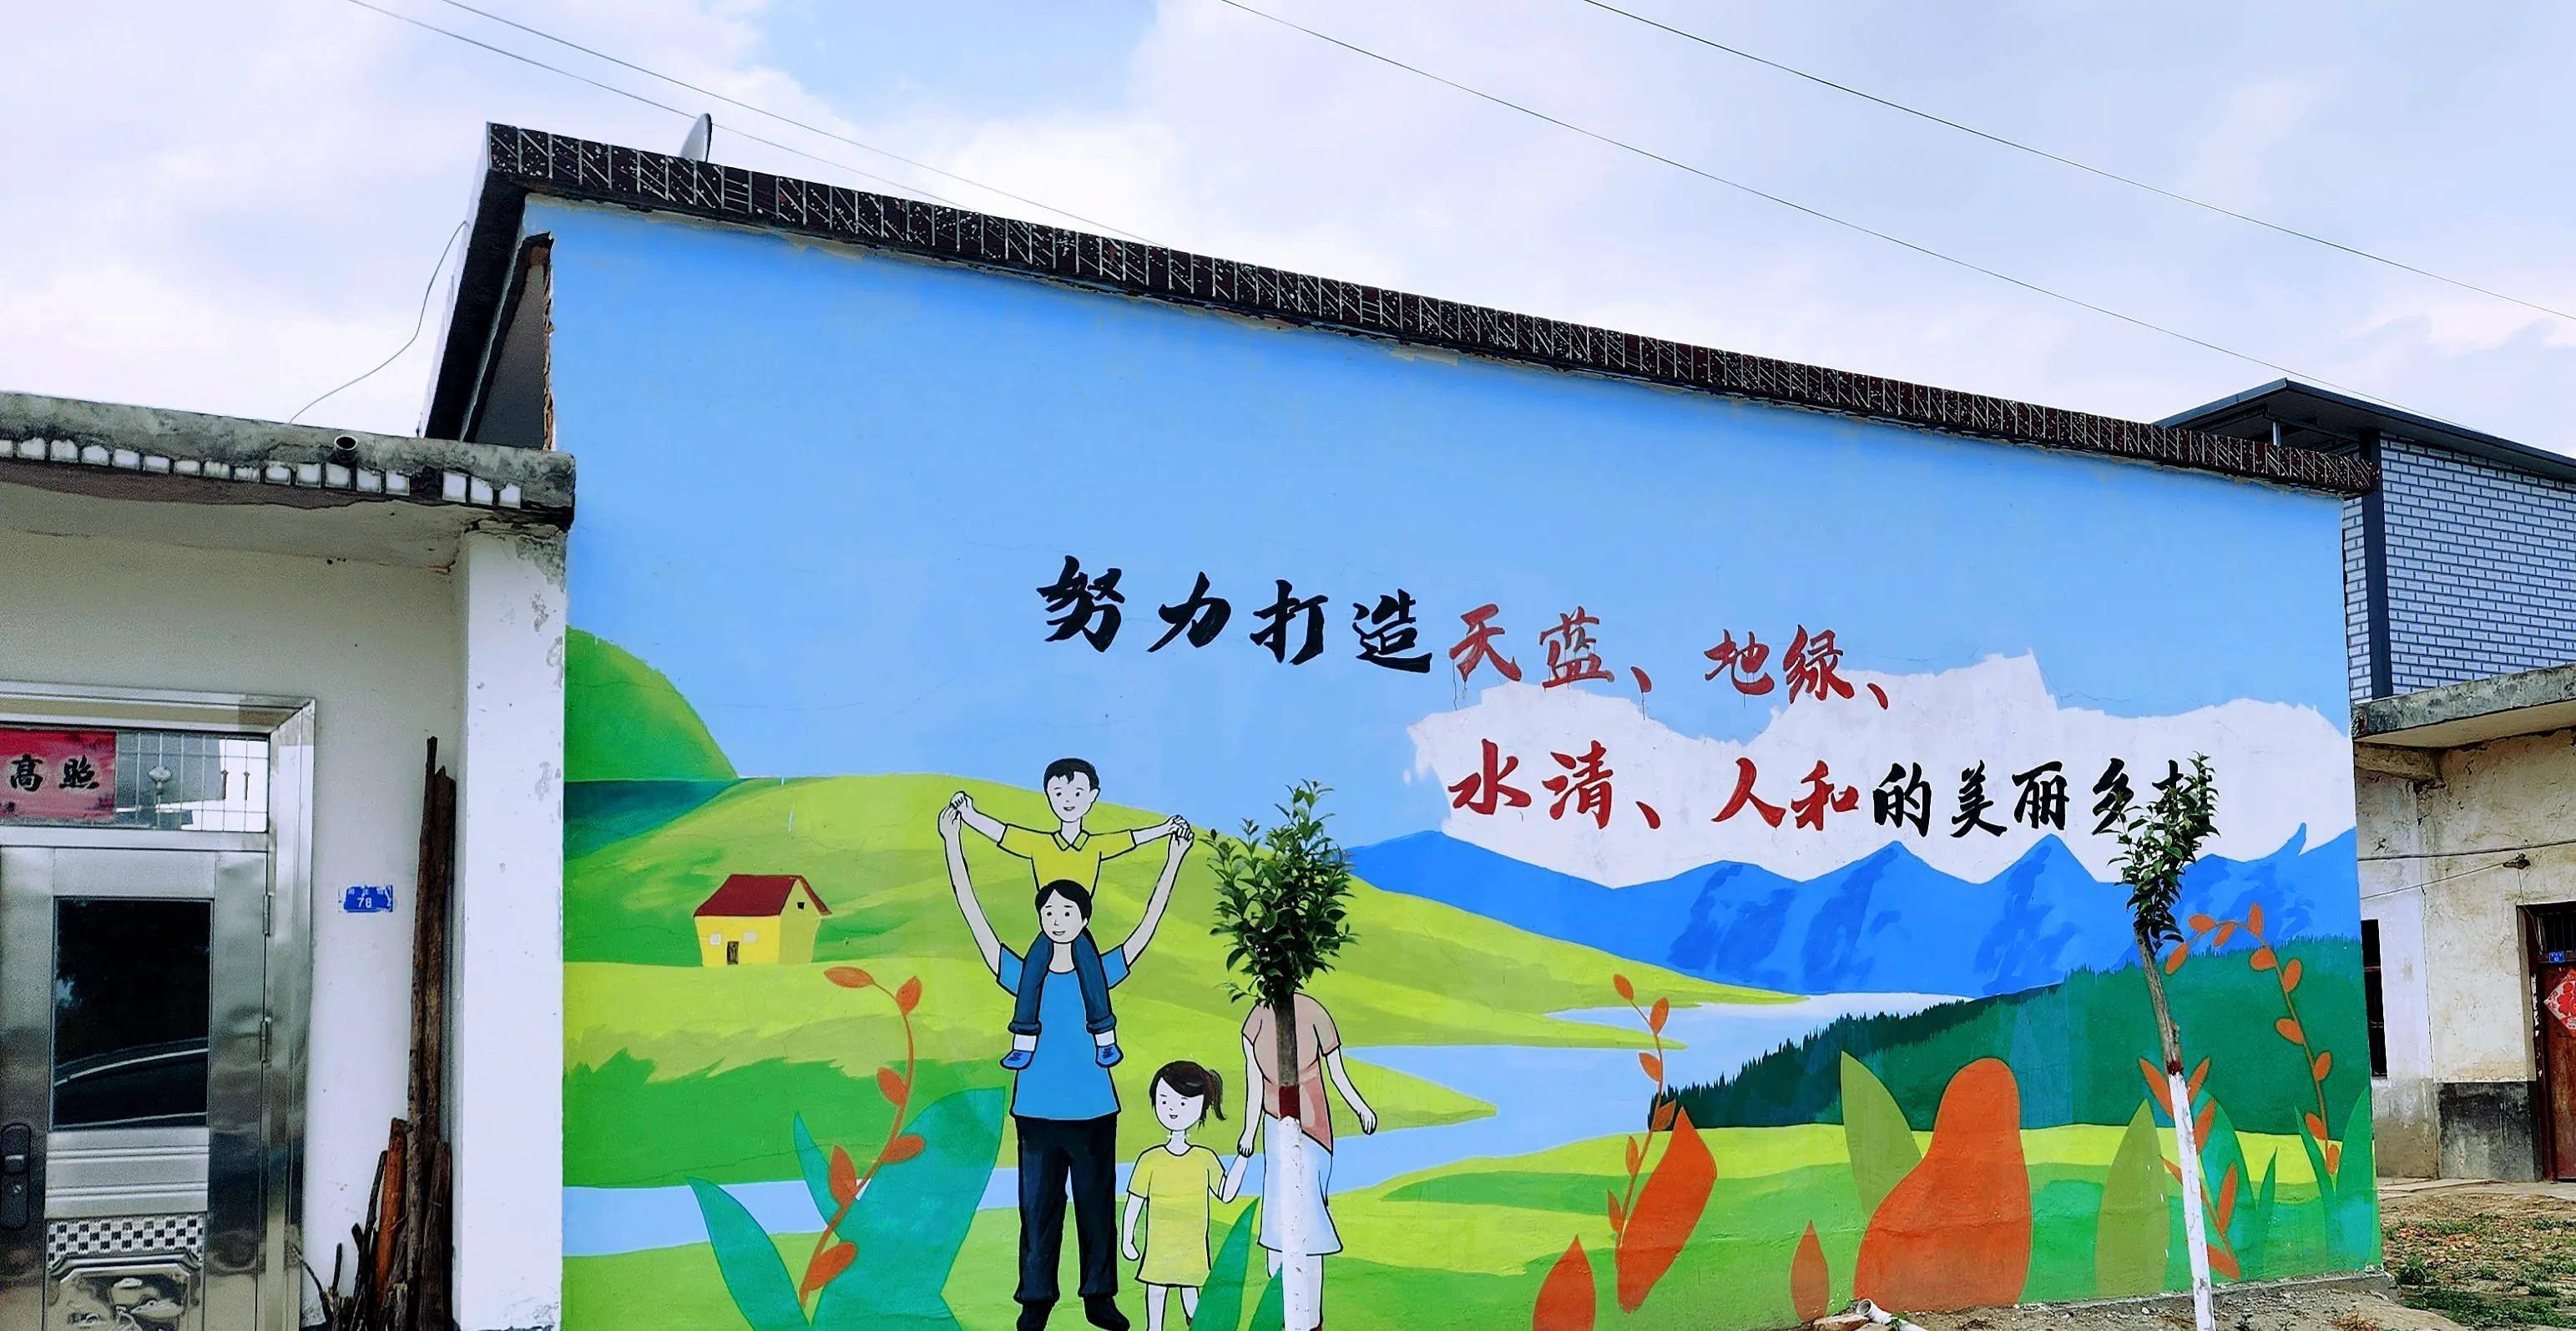 固始县八庙村:彩绘墙装扮美丽村庄,赋能乡村振兴!